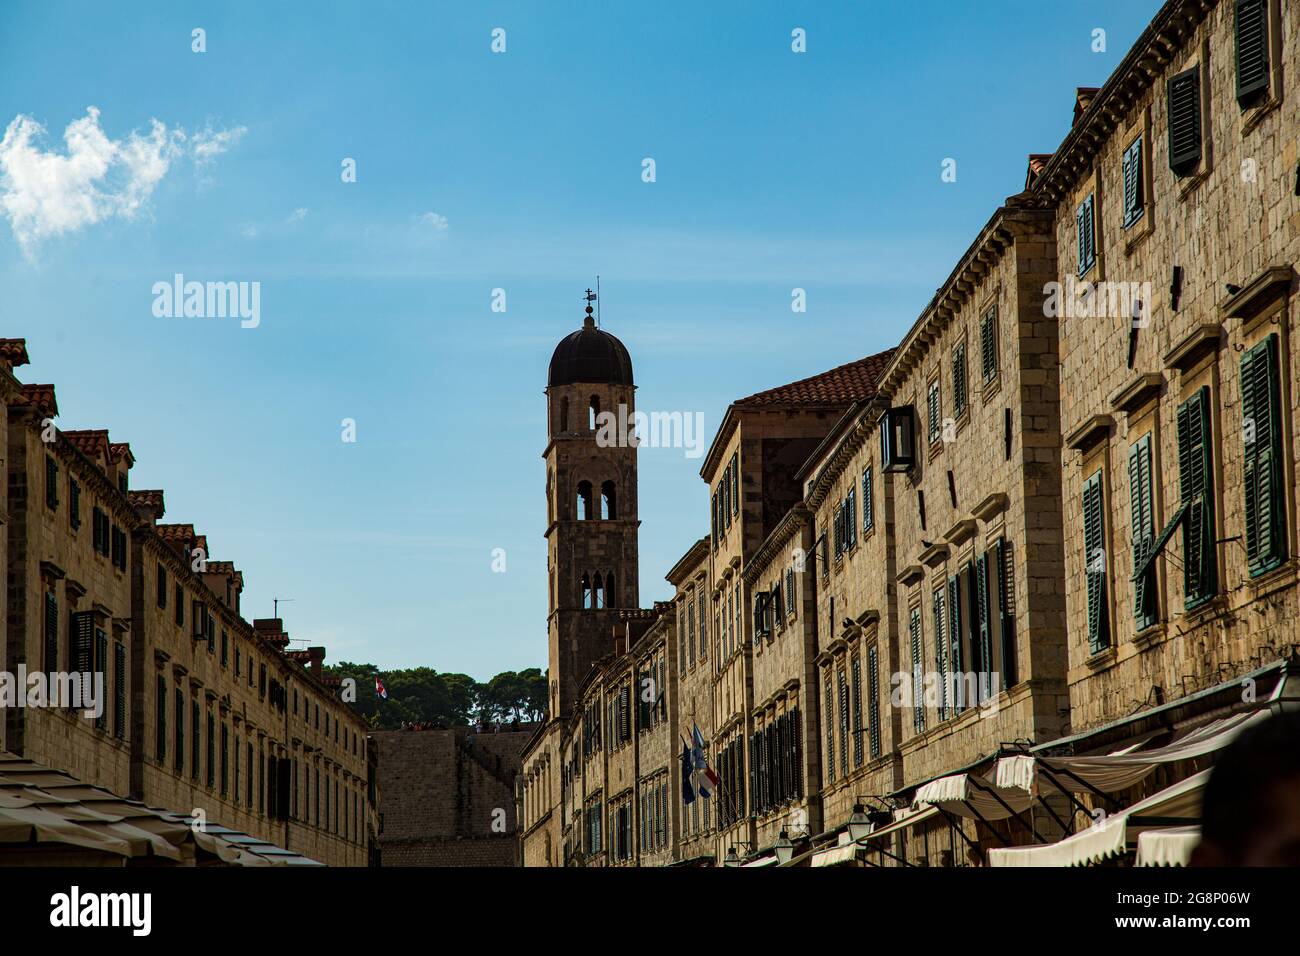 Casco antiguo amurallado de la ciudad de Dobrovnik desde diversos puntos de vista, calles pequeñas y rincones que transportan a otra época Stock Photo